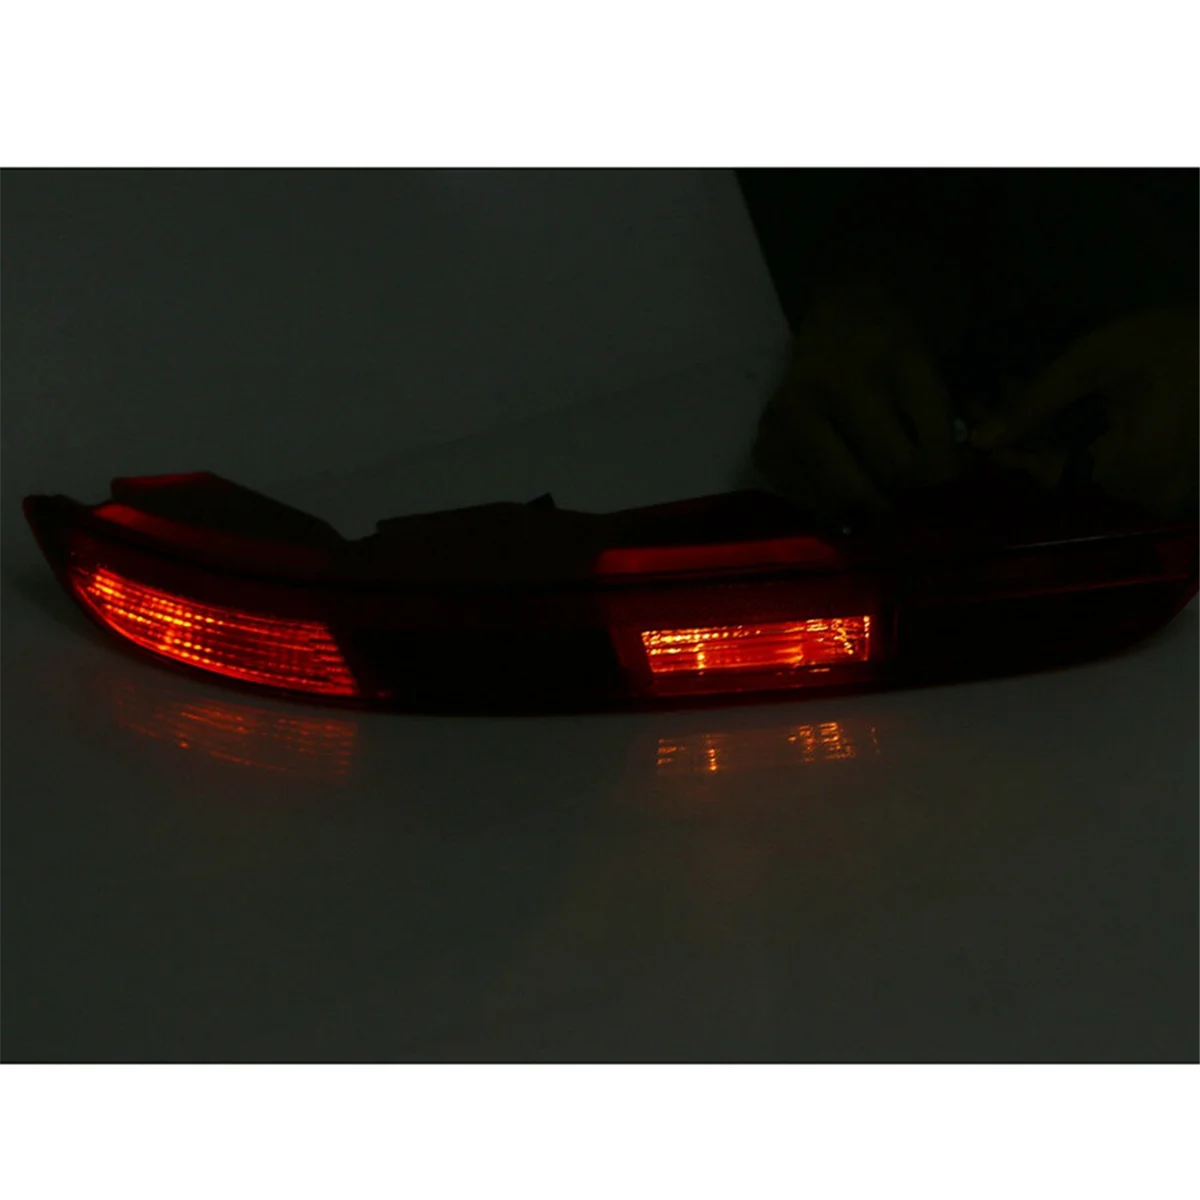 

Car Rear Bumper Tail Light Reverse Lamp Red with Bulbs for Audi Q3 2016-2018 8U0945096B 8U0945095B 8UD945096B 8UD945095B